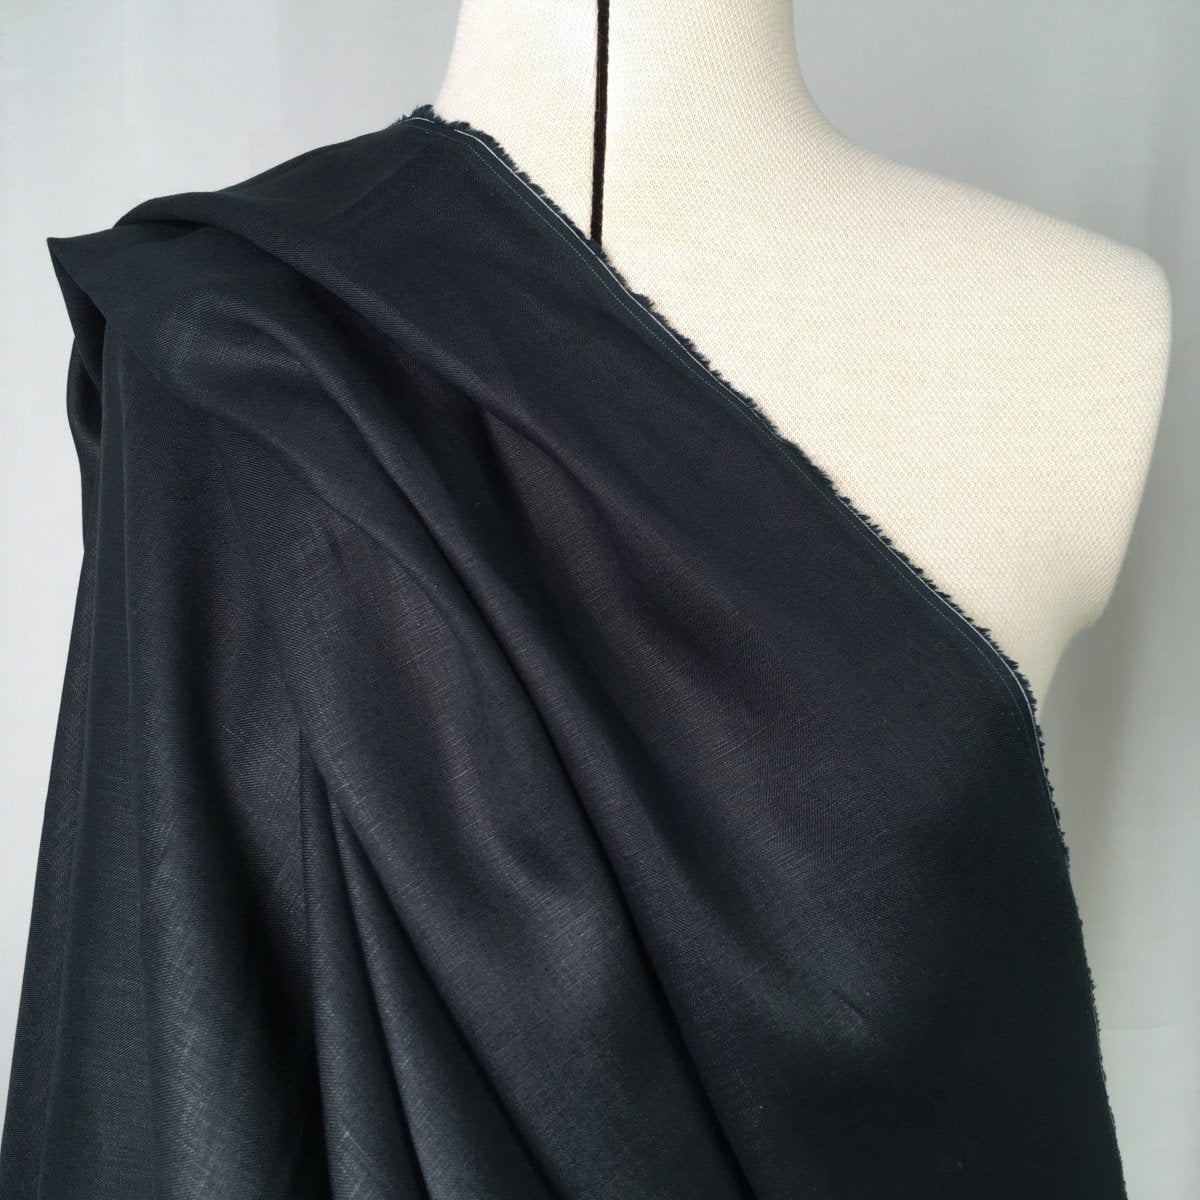 Newport - 100% Linen - Black - Sewing Gem